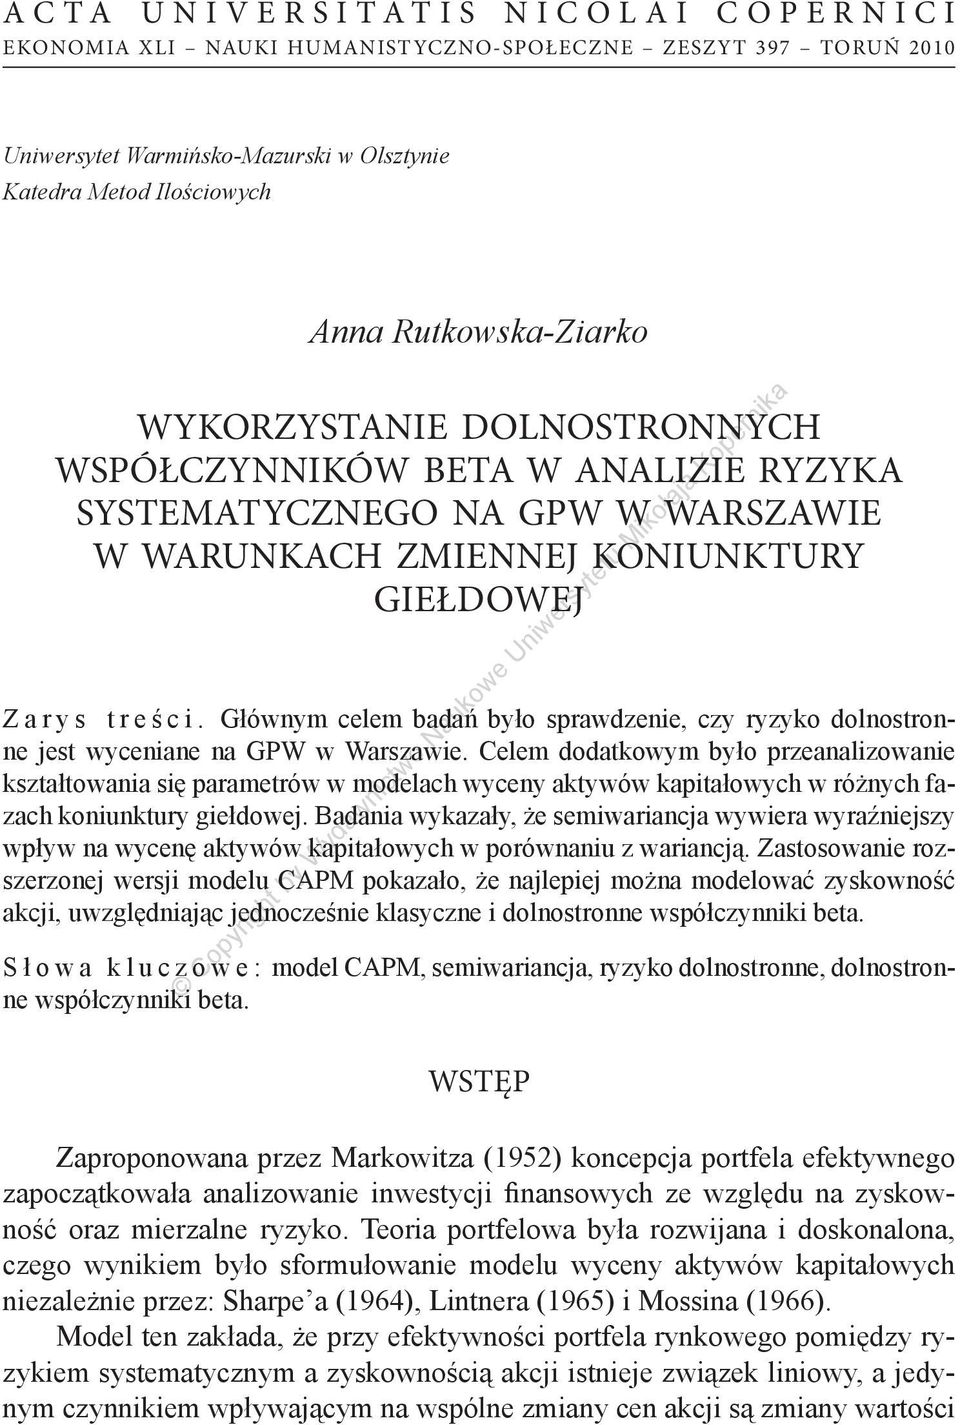 Głównym celem badań było sprawdzenie, czy ryzyko dolnostronne jest wyceniane na GPW w Warszawie.